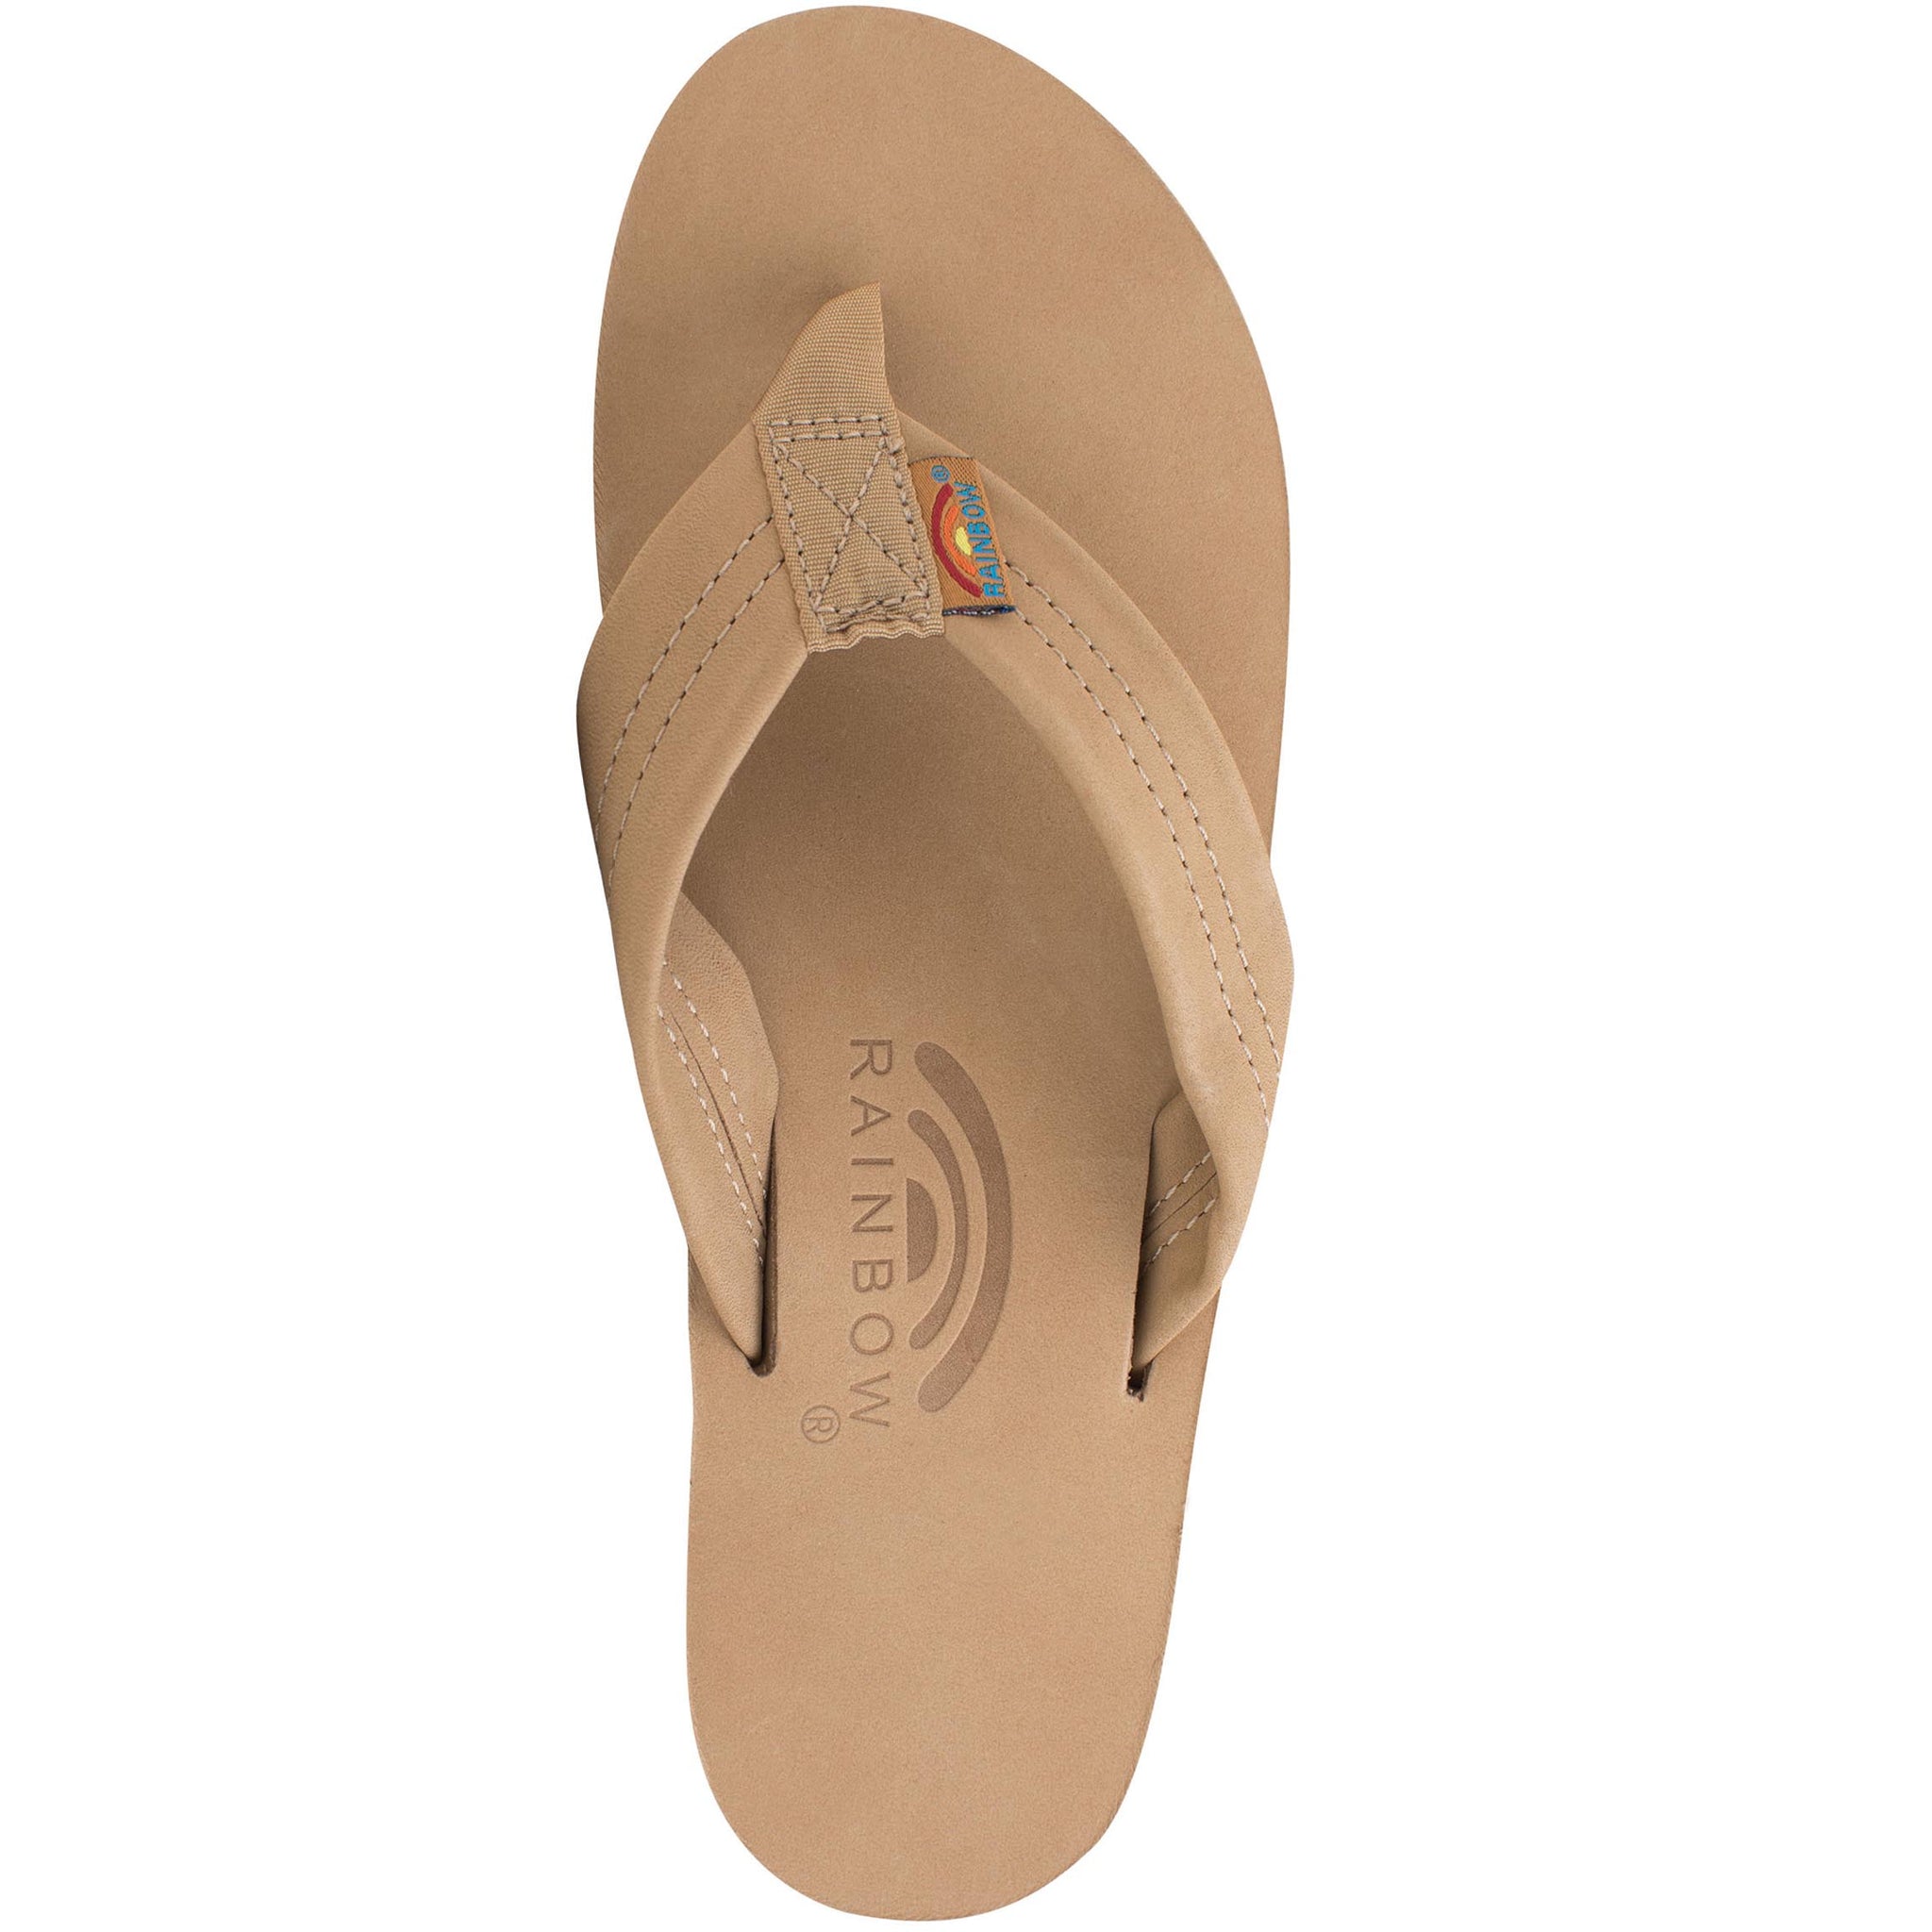 Flip Flops / Sandals - Rainbow Original - 302 ALTS - 302 Double Layer/Thick  Strap - Ladies